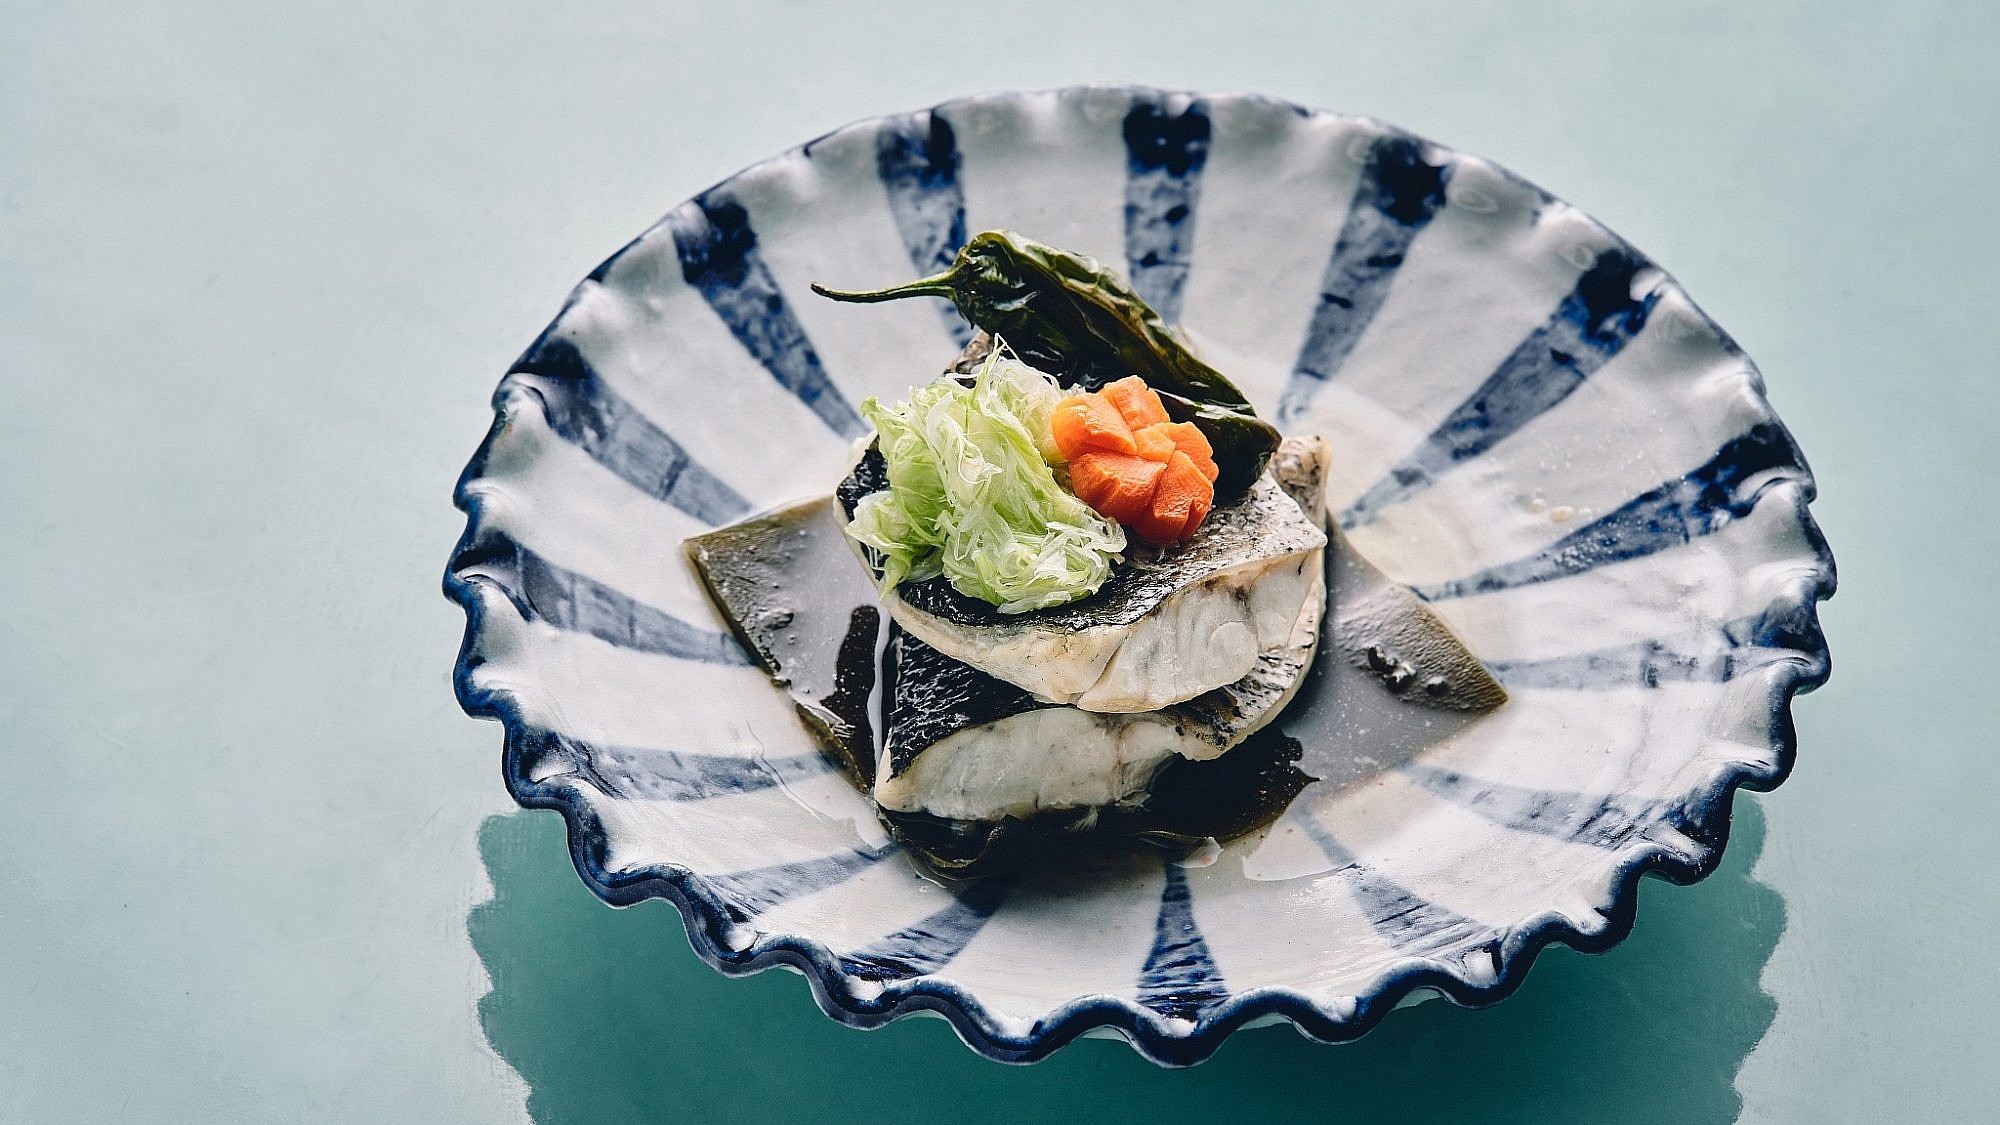 דג מאודה בסאקה עם צ'ירזו- ויניגרט יפני מסורתי של שף מאסאקי סוגיסאקי. צילום: אמיר מנחם. סטיילינג: דיאנה לינדר